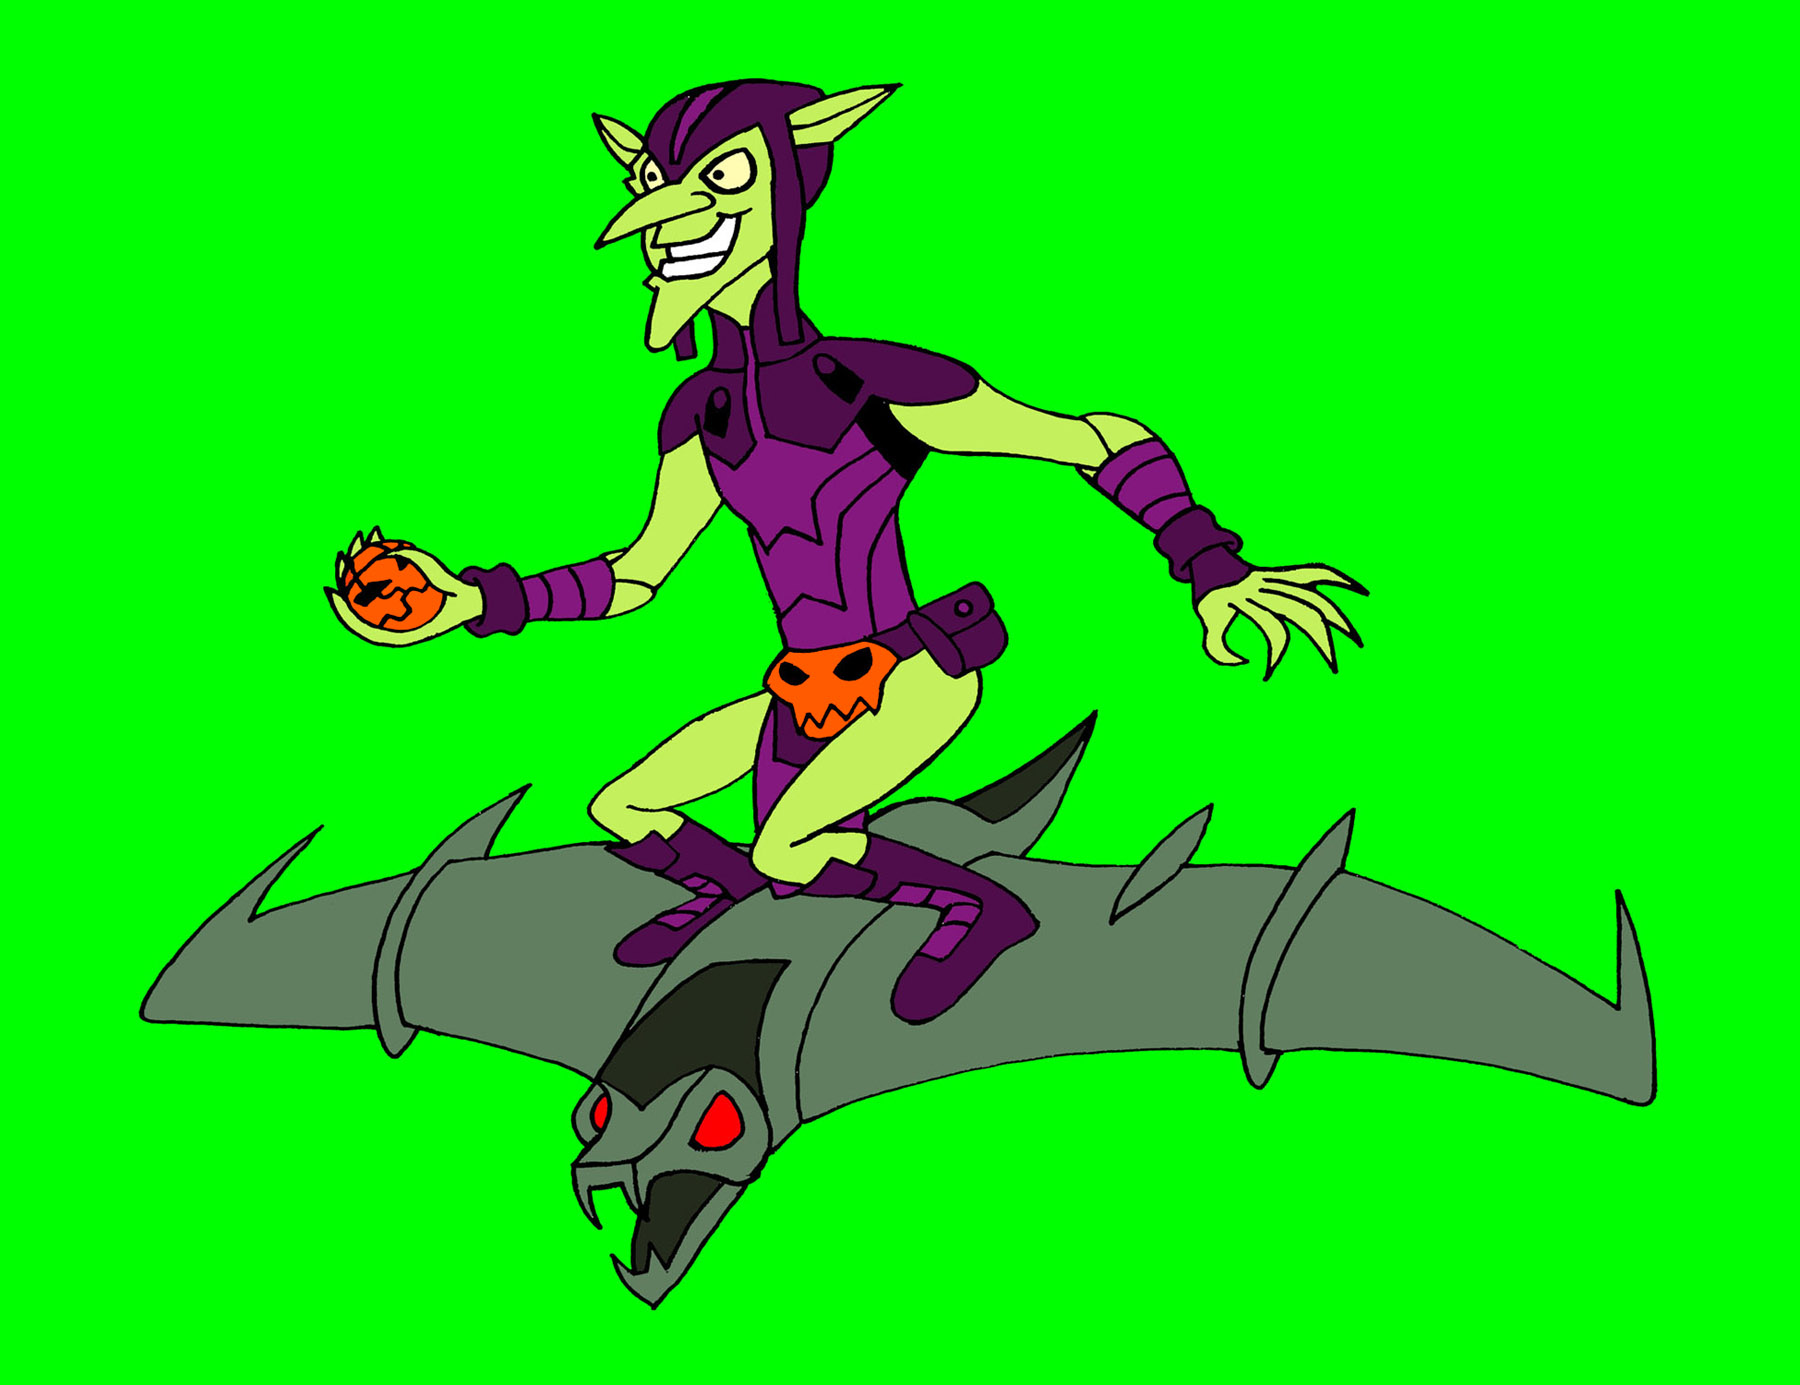 The Green Goblin (Spectacular Spider-Man) by Rodan5693 on DeviantArt